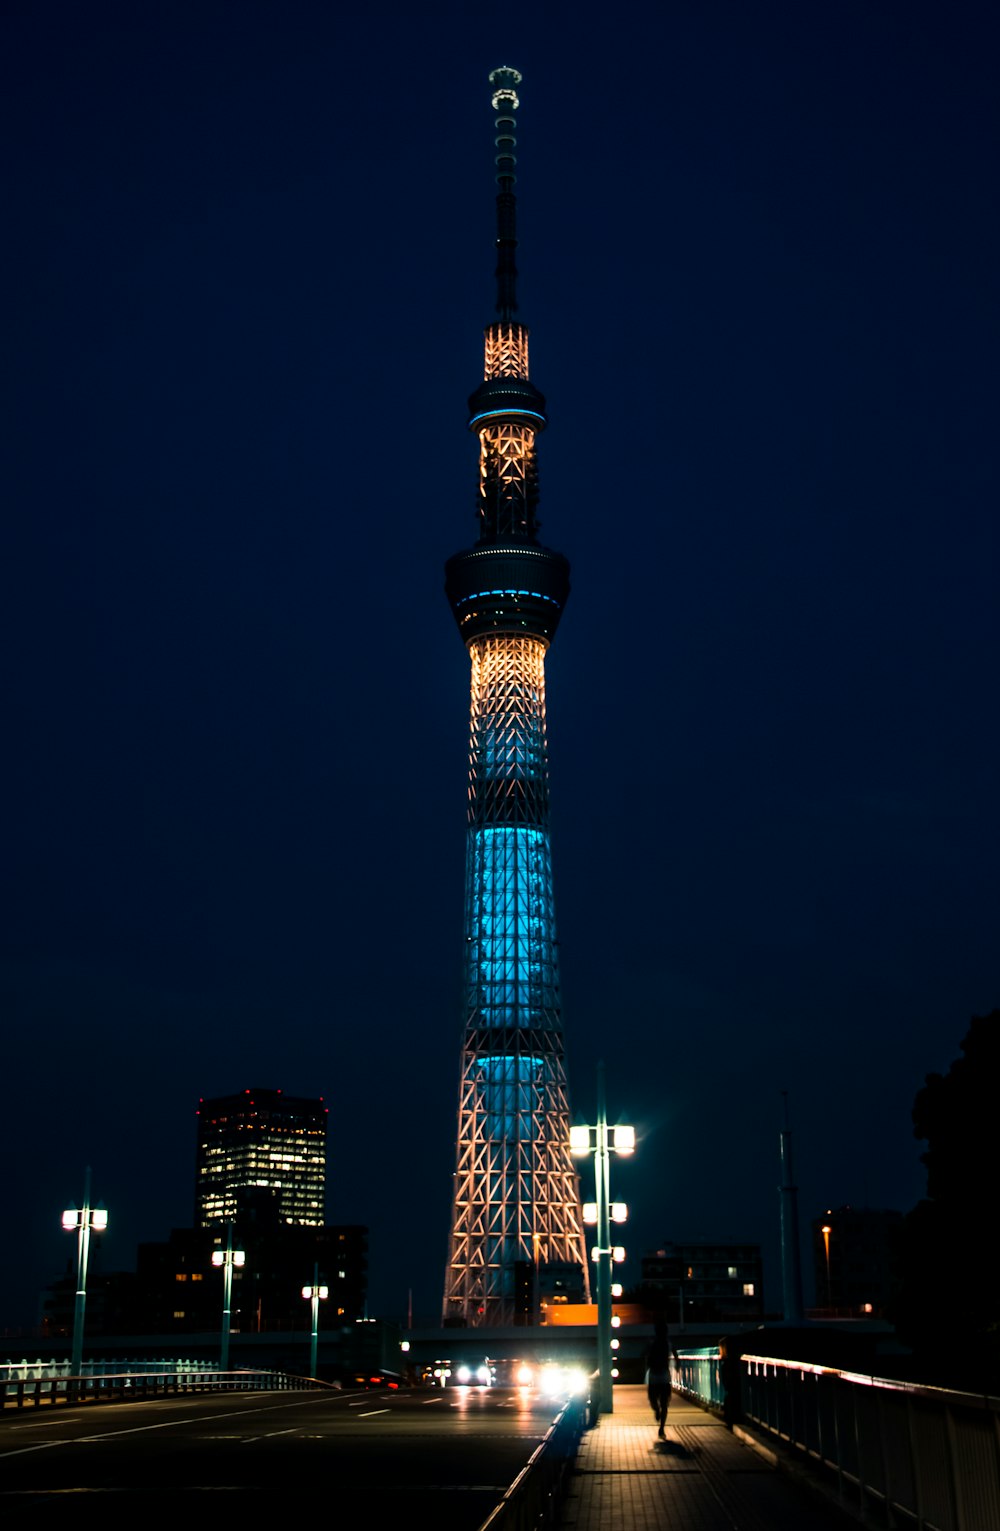 Torre iluminada durante la noche